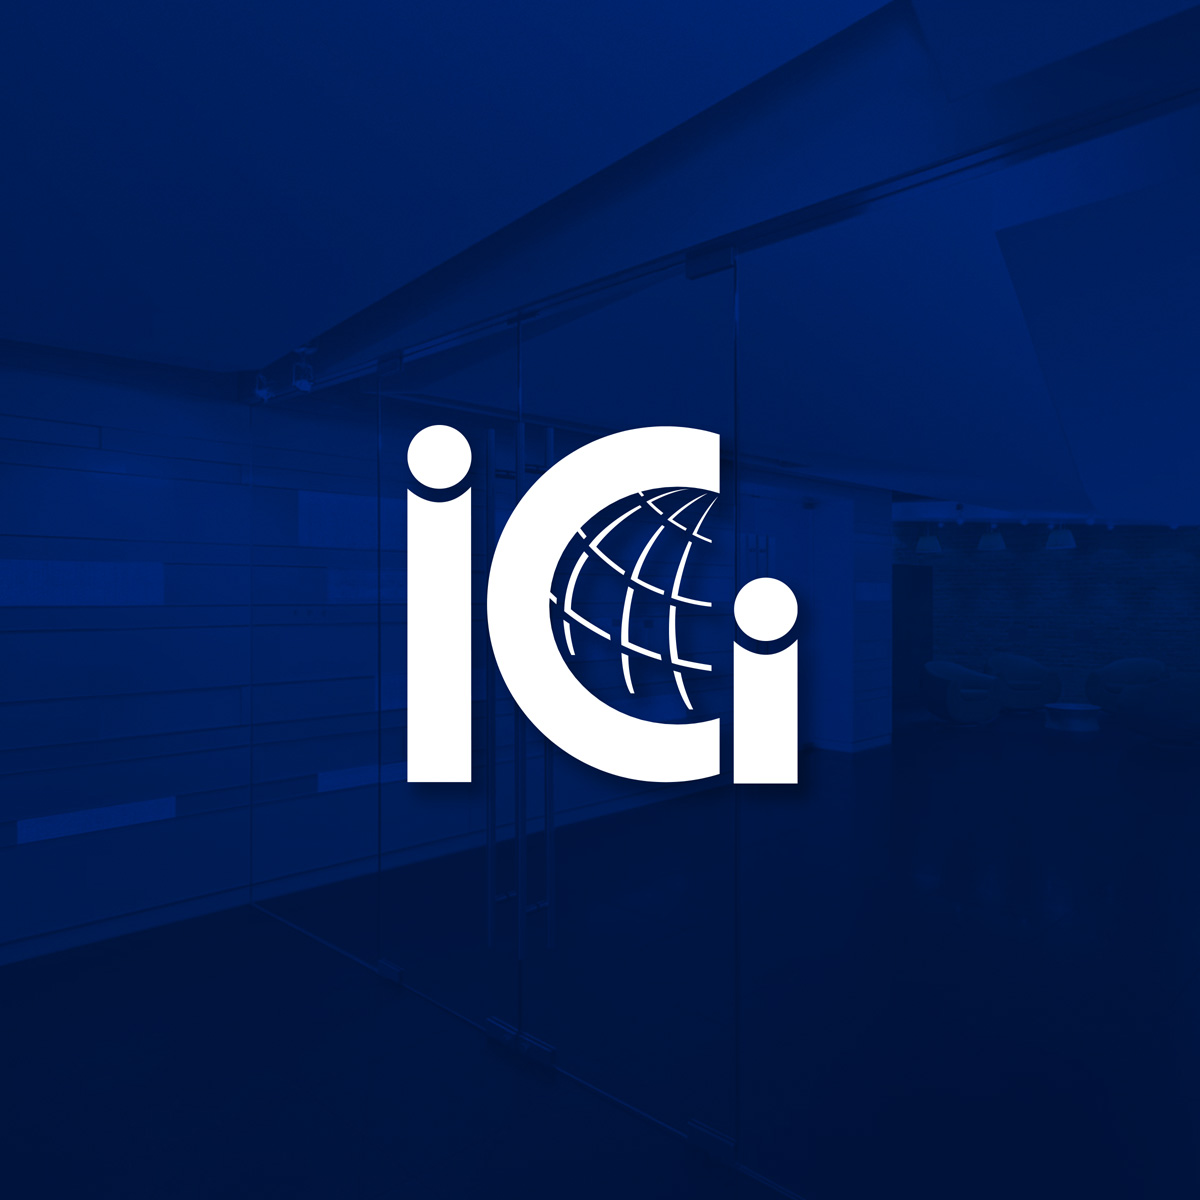 ICI Website